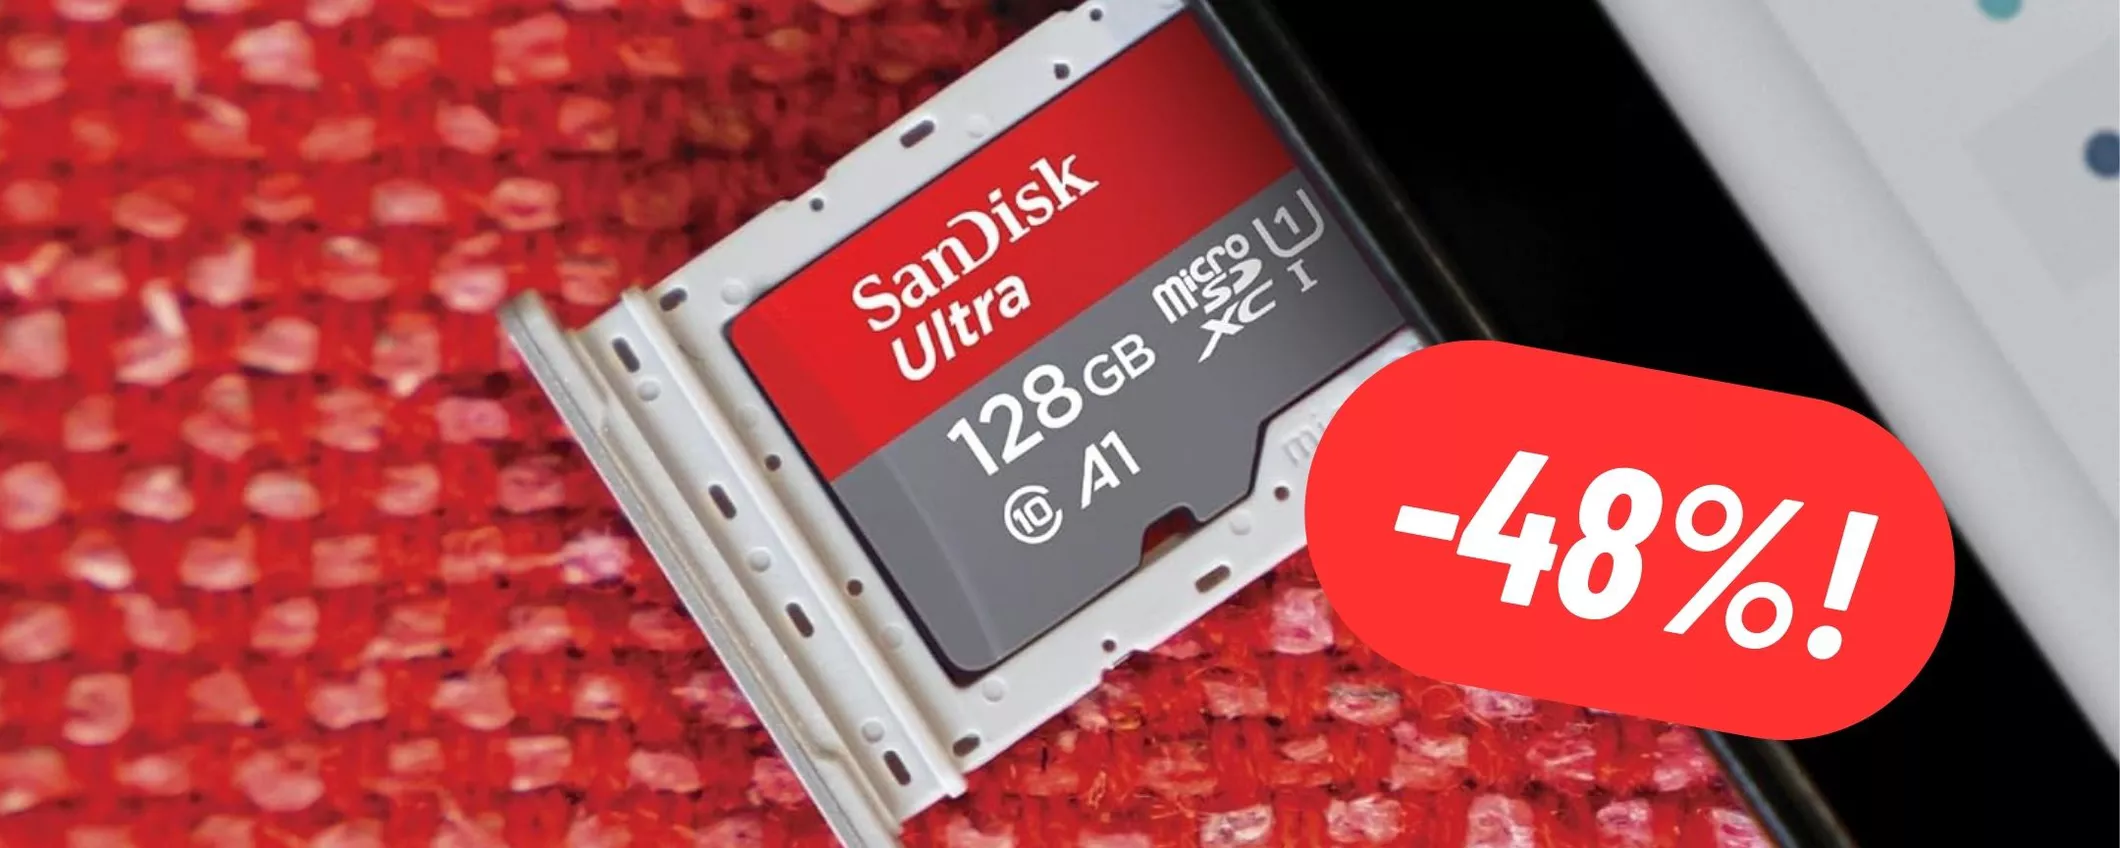 microSD SanDisk da 128GB SCONTATISSIM su Amazon (-48%)